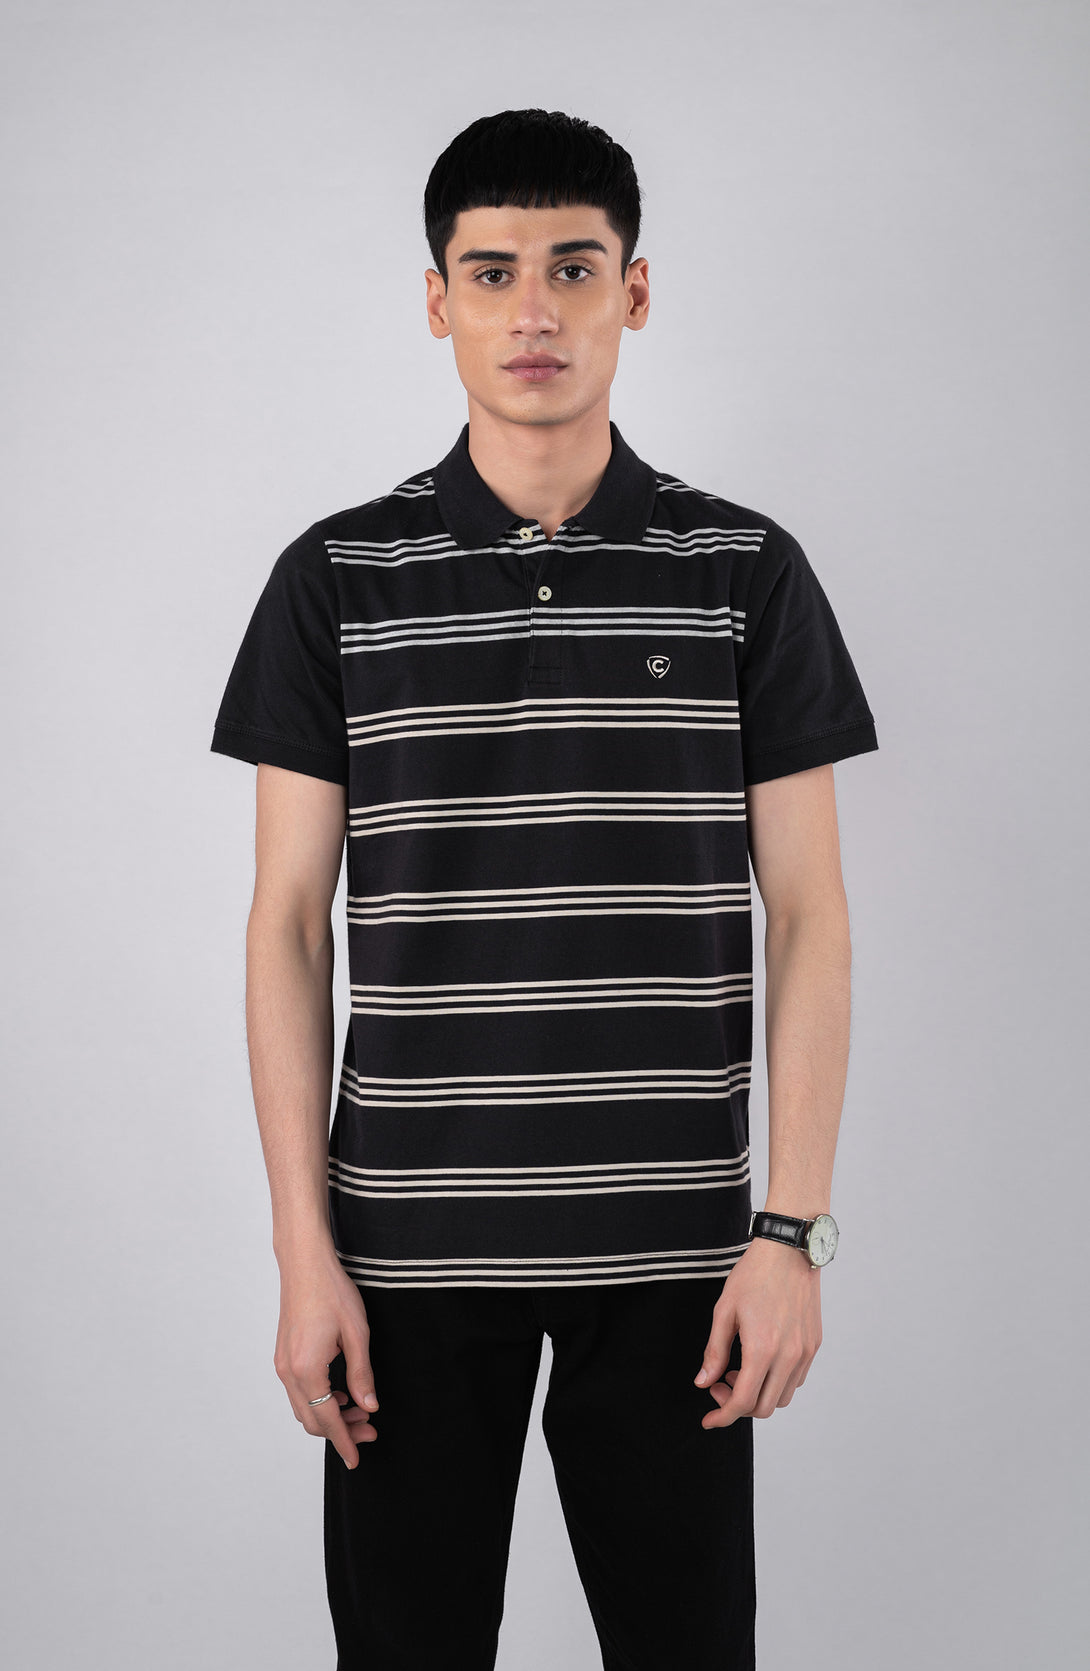 Black Polo Shirt With Grey Stripes – Cambridge Shop